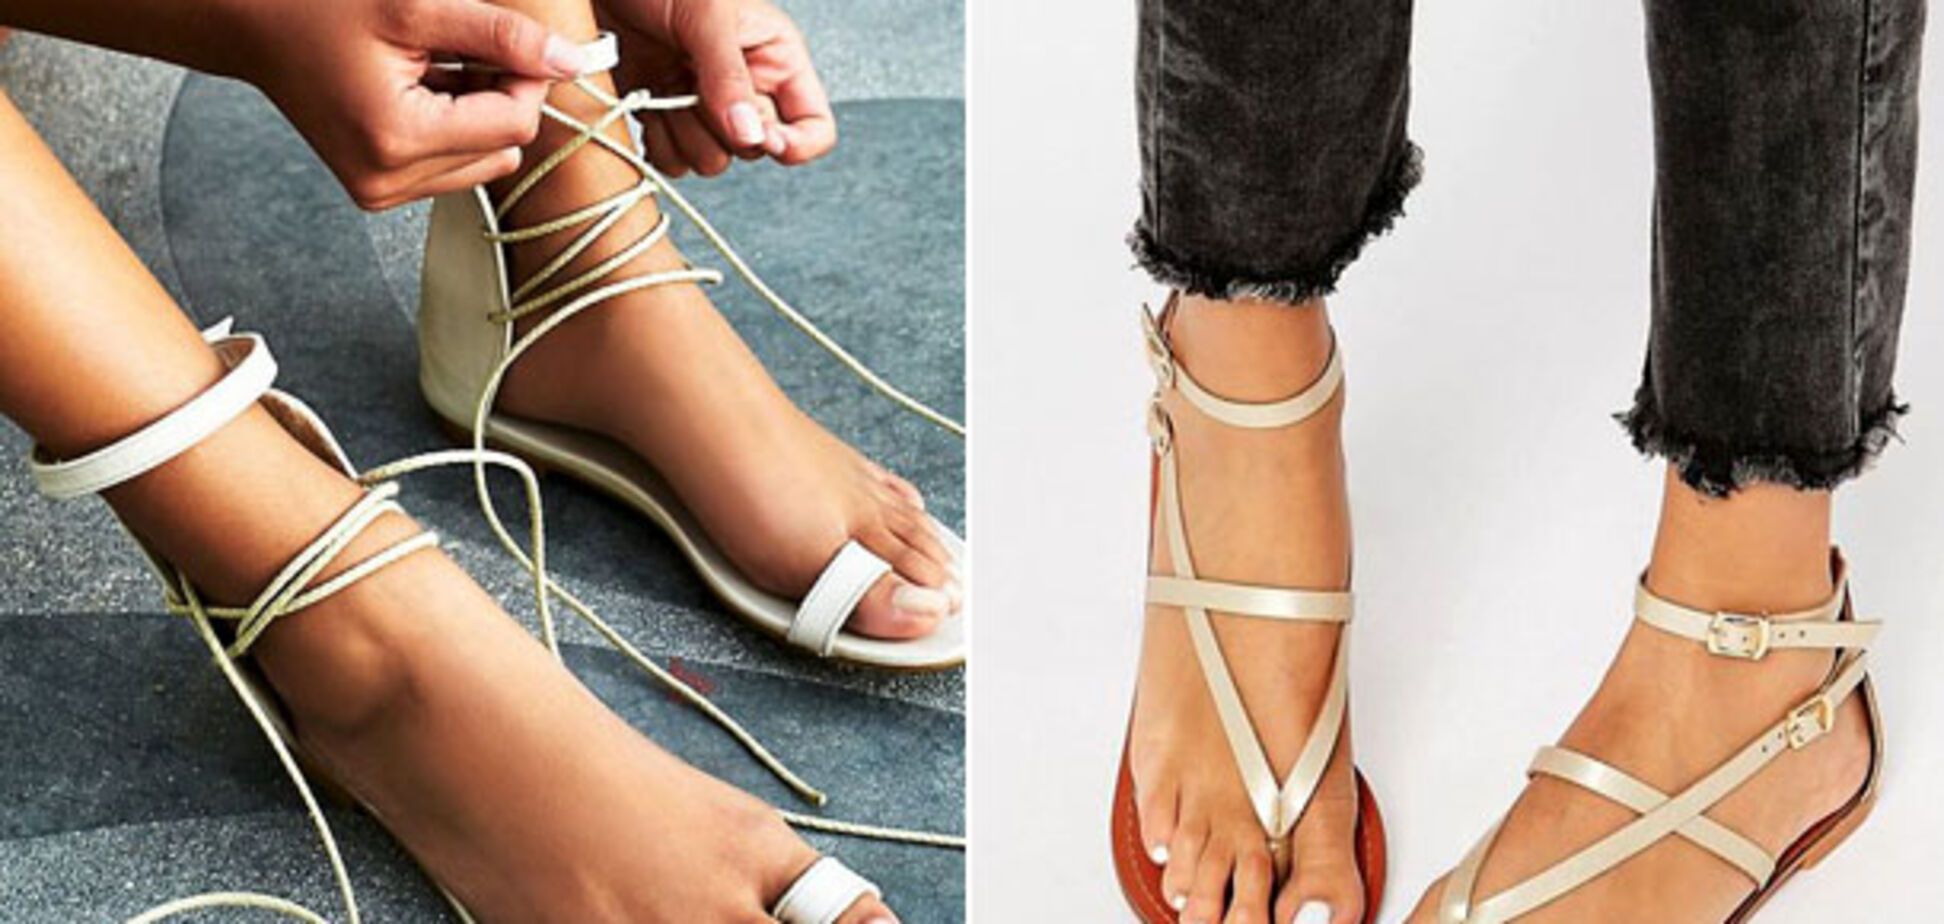 Тренд літа 2018: як вибрати ідеальні сандалі